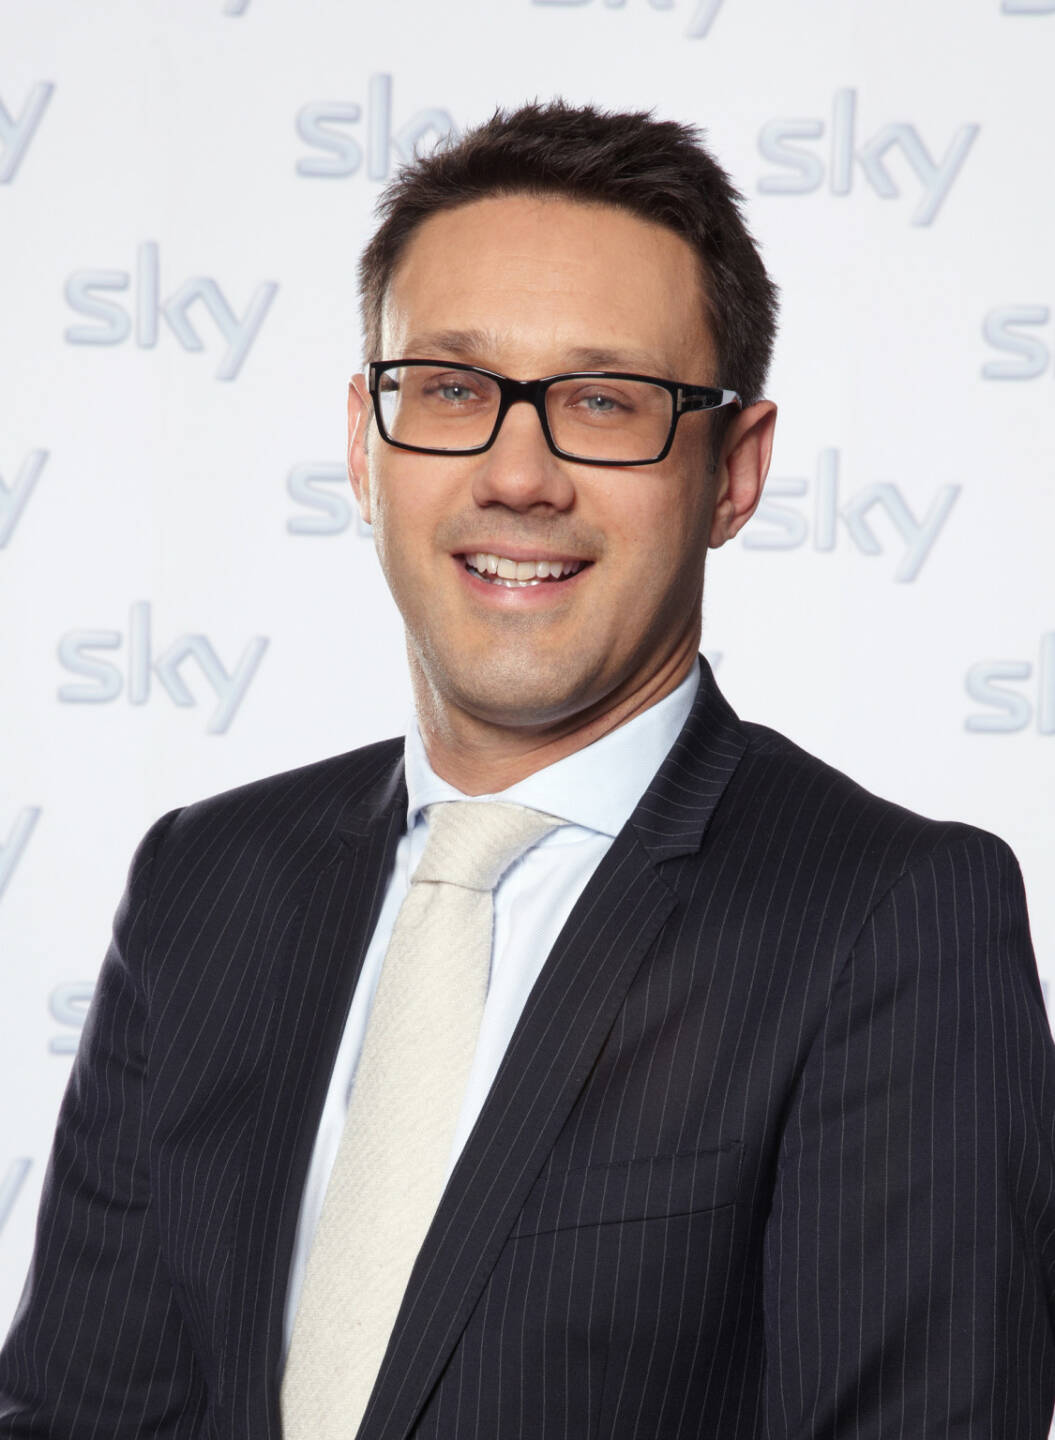 Steven Tomsic, Vorstand Finanzen, Sky Deutschland AG

